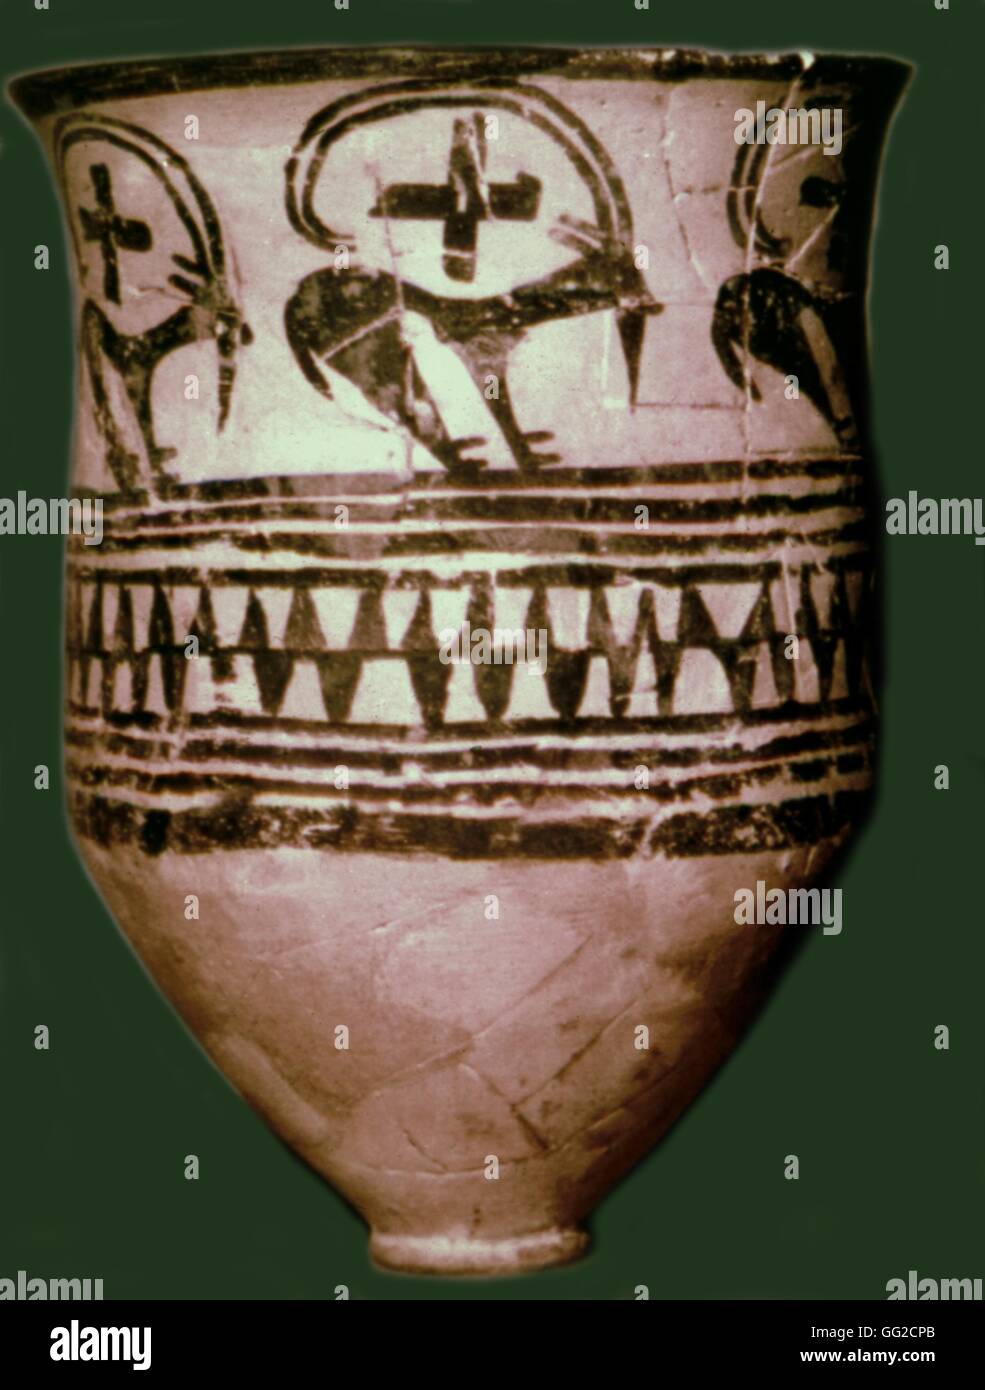 Keramik von Tepe-Siyalk, befindet sich eine Stadt südlich von Teheran 4. Jahrtausend v. Chr. Mesopotamien archäologische Museum von Ankara Stockfoto